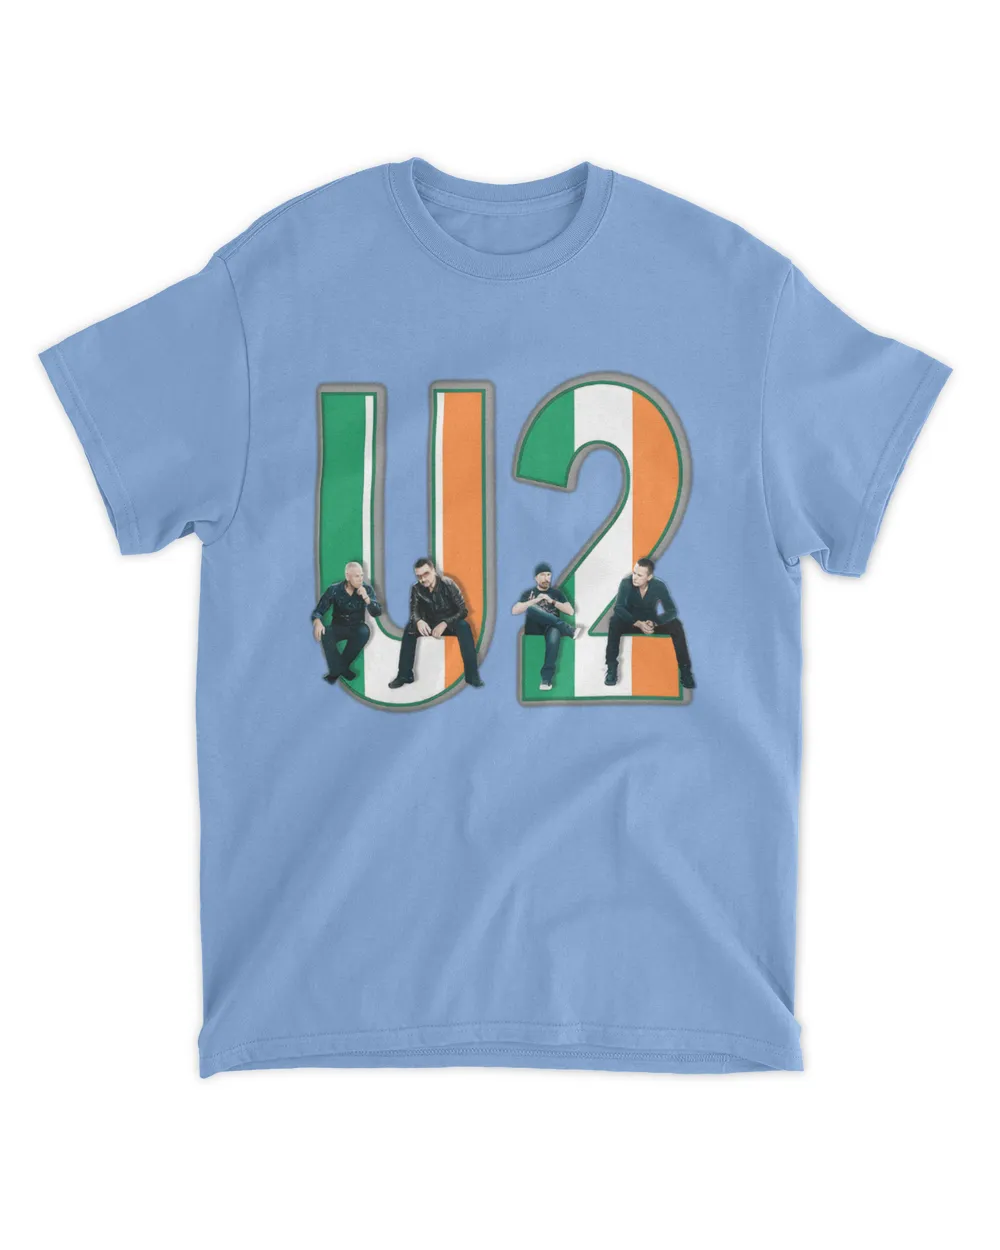 U2 t shirt - U2 with Irish Flag